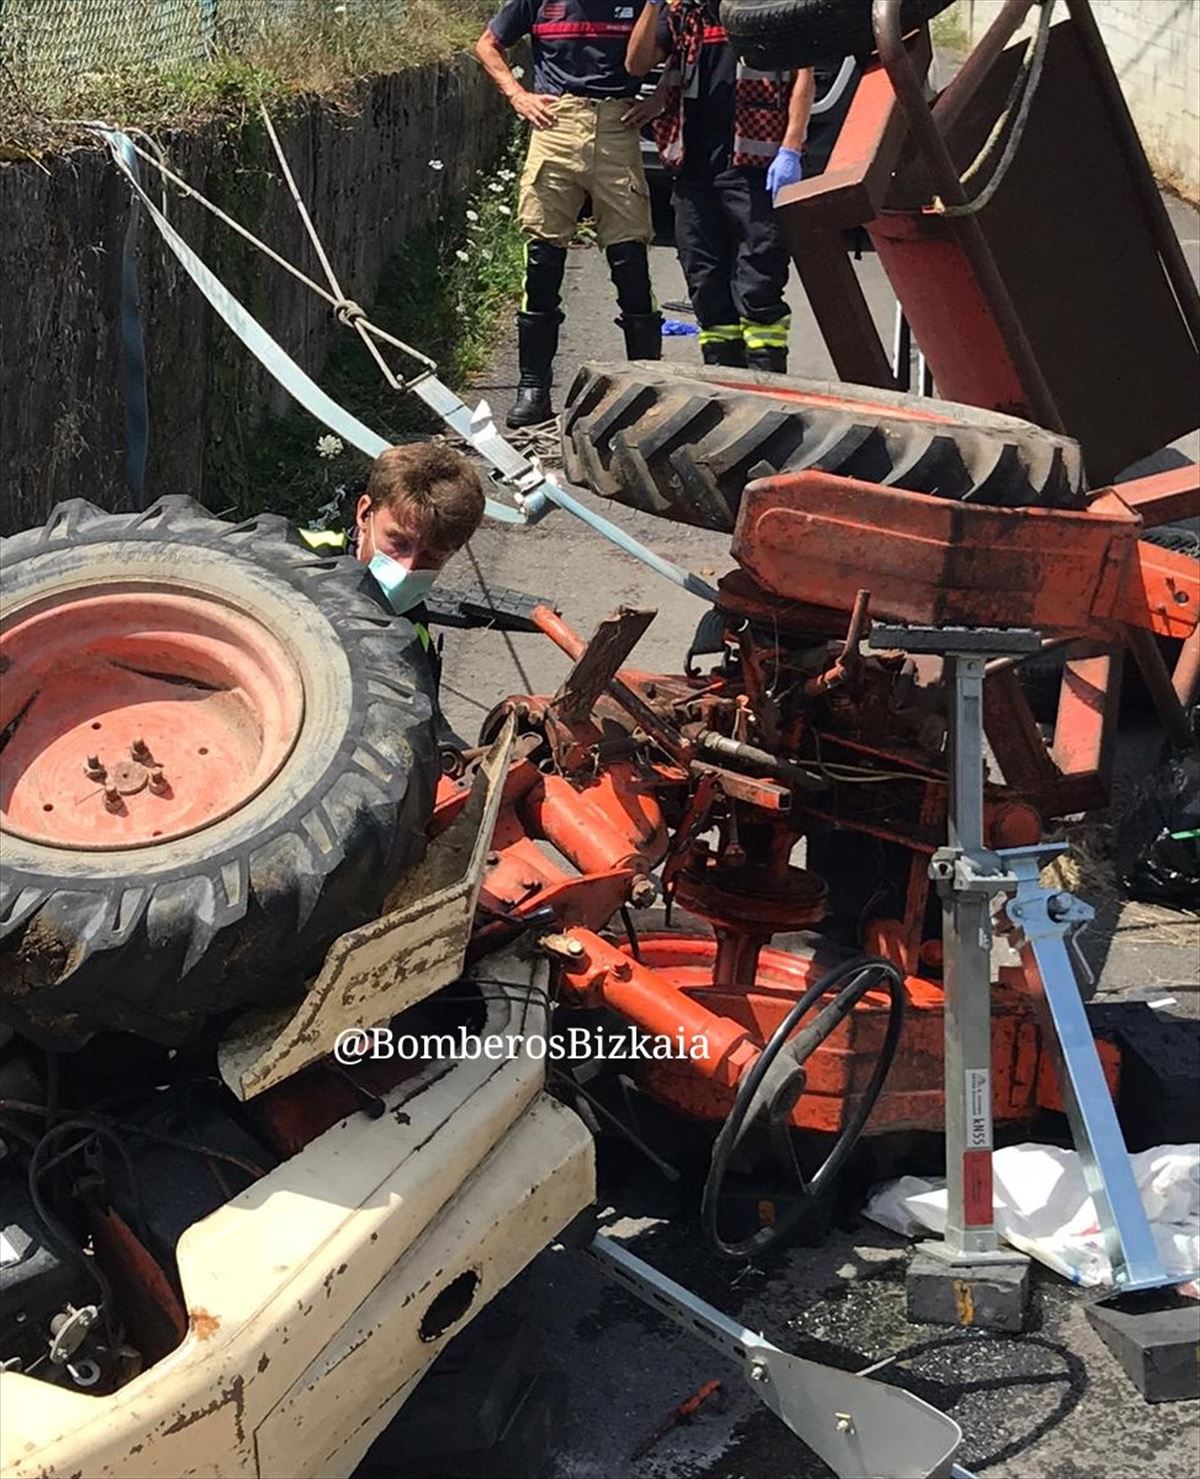 67 urteko gizon bat larri zauritu da Mungian, traktorea iraulita. Argazkia: Bizkaiko suhiltzaileak